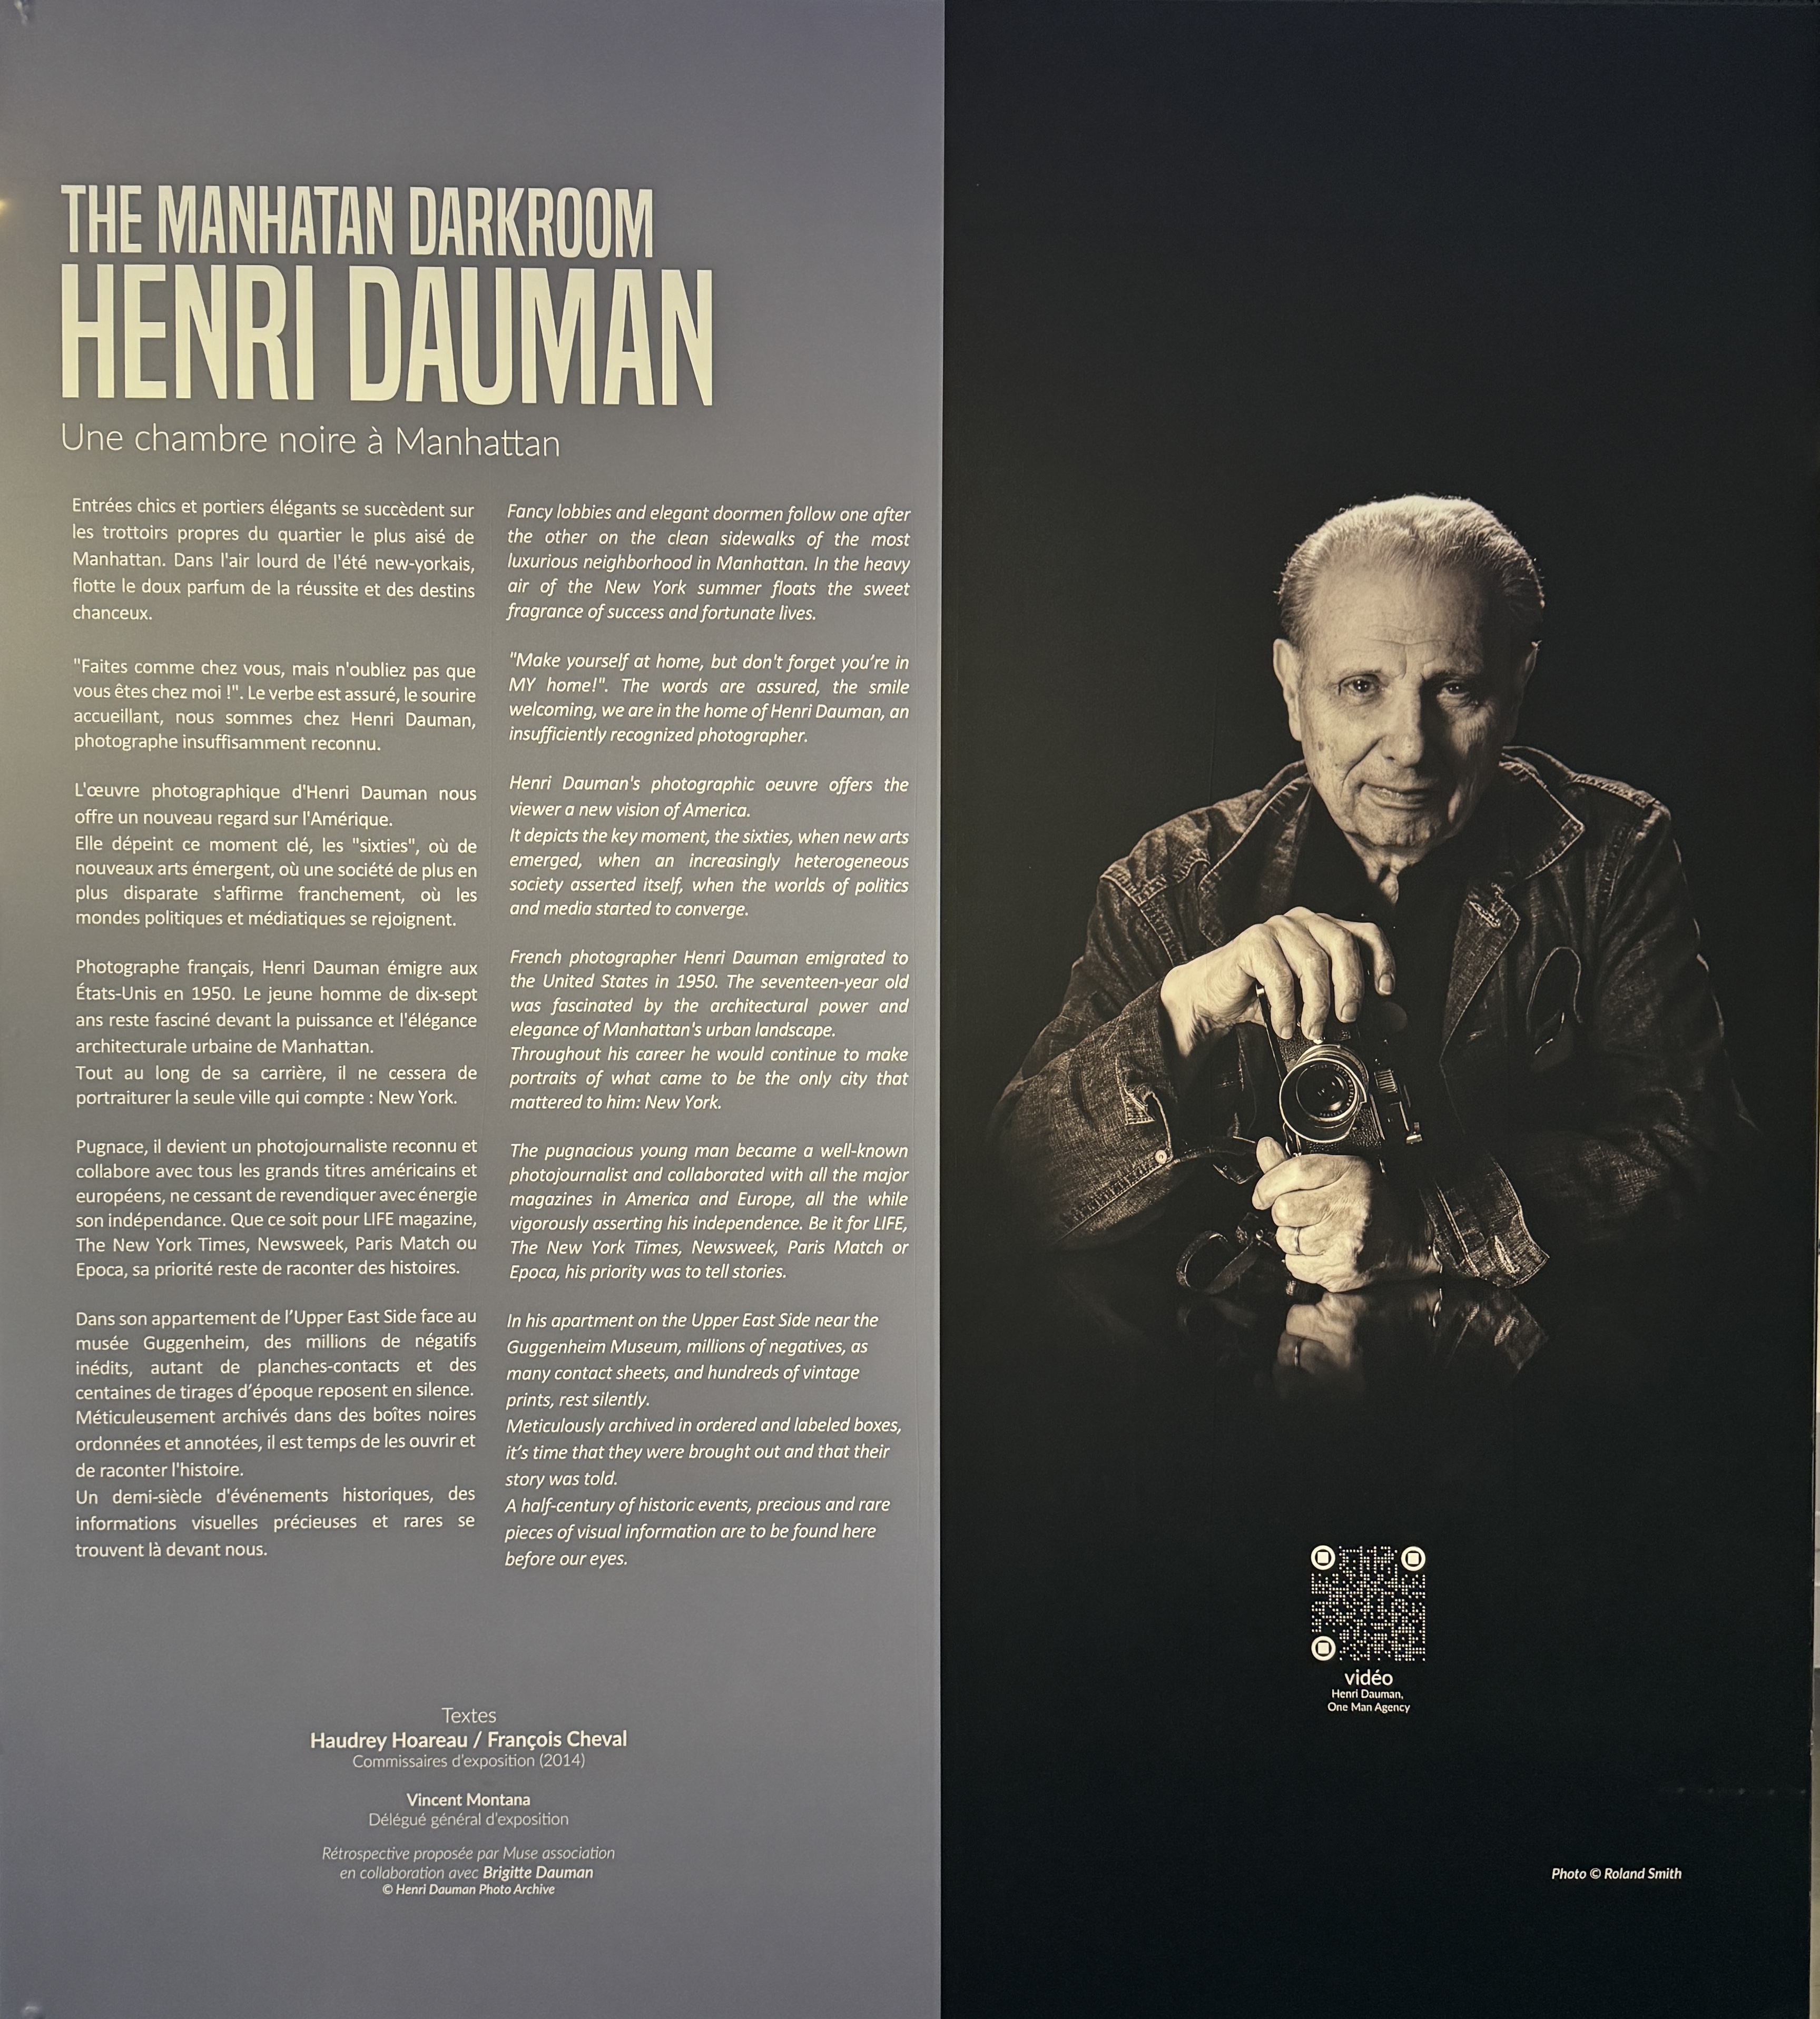 Henri Dauman